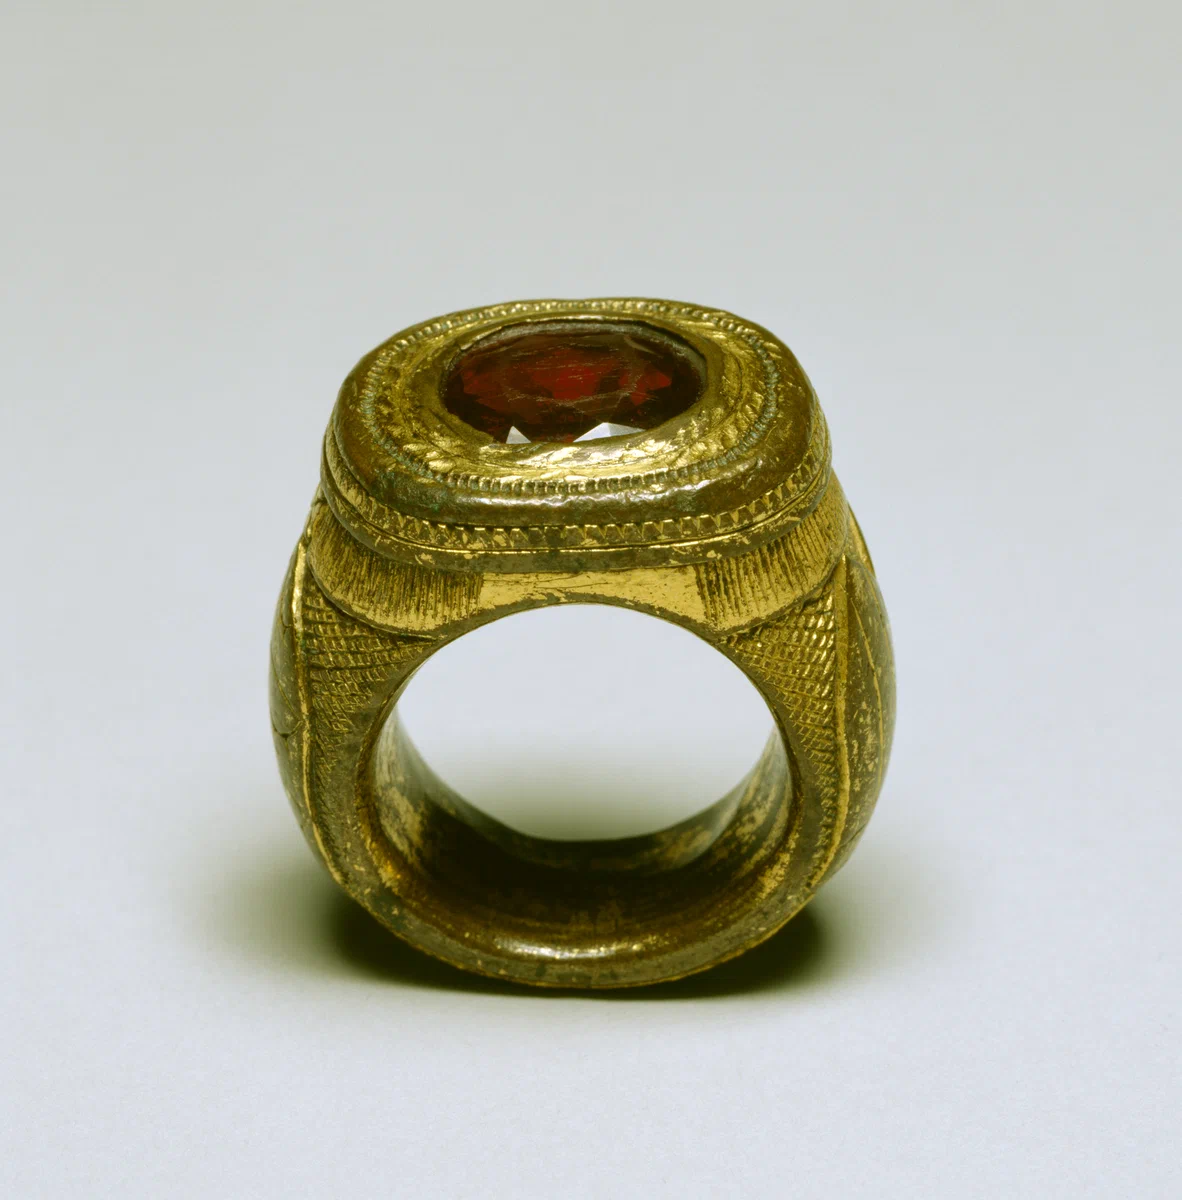 Папское кольцо. 15 век. Италия. Хранится в Музее Уолтерс, Балтимор, США